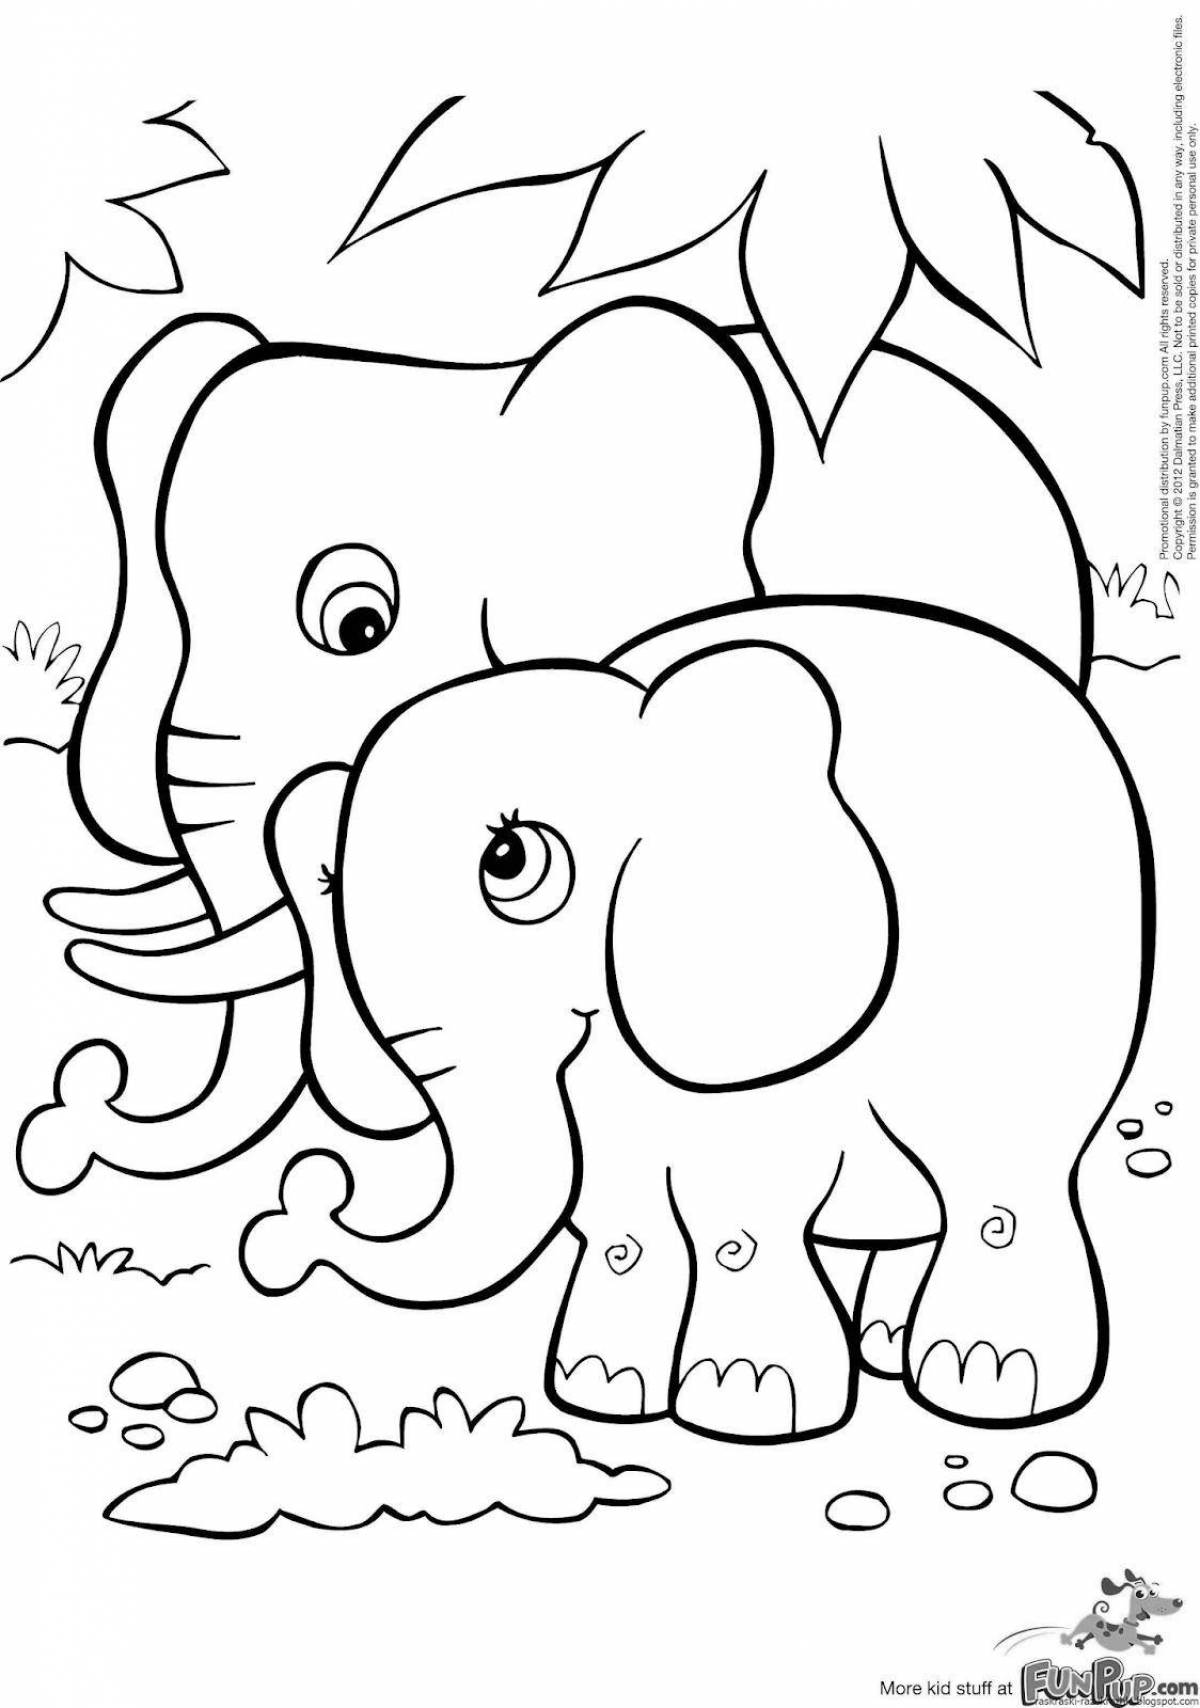 Причудливая раскраска слона для детей